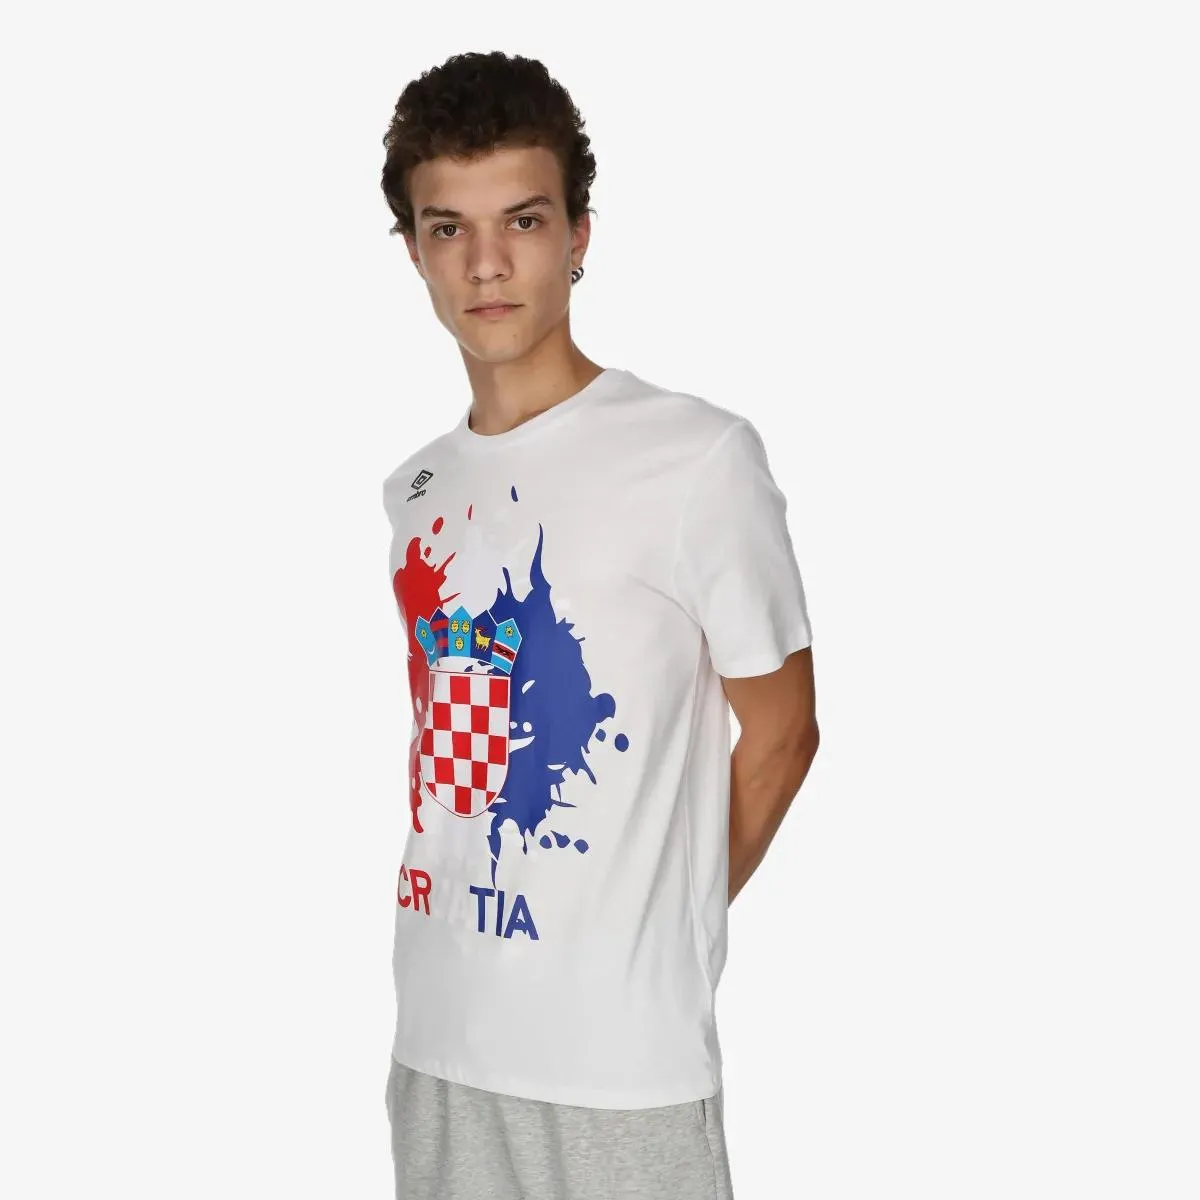 Umbro T-shirt CROATIA FAN 